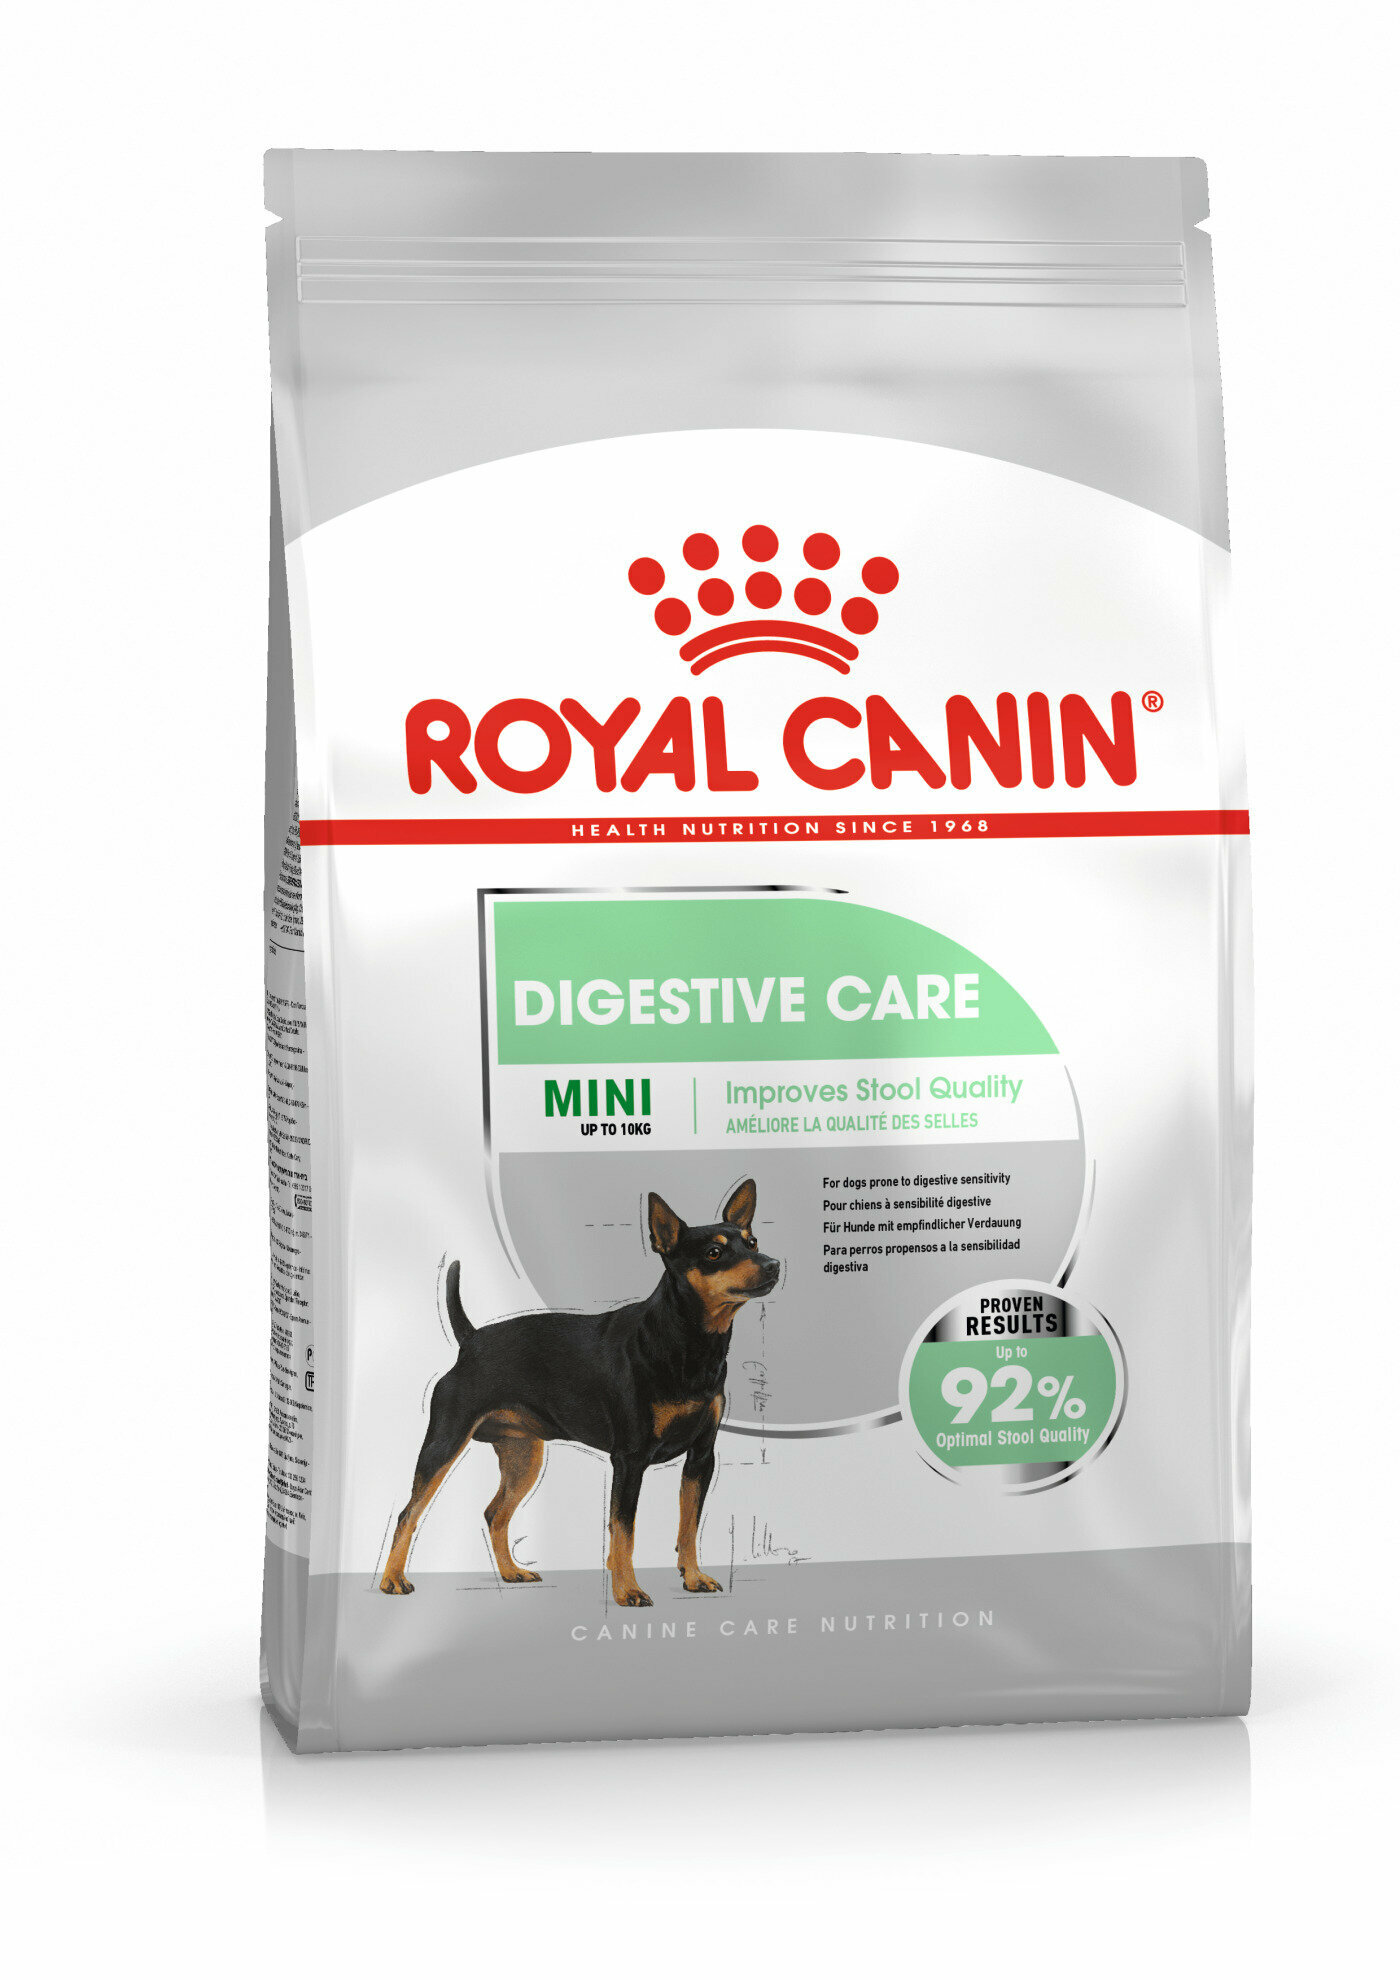 Корм сухой ROYAL CANIN MINI DIGESTIVE CARE корм для собак мелких пород с чувствительным пищеварением 1кг х 5 шт